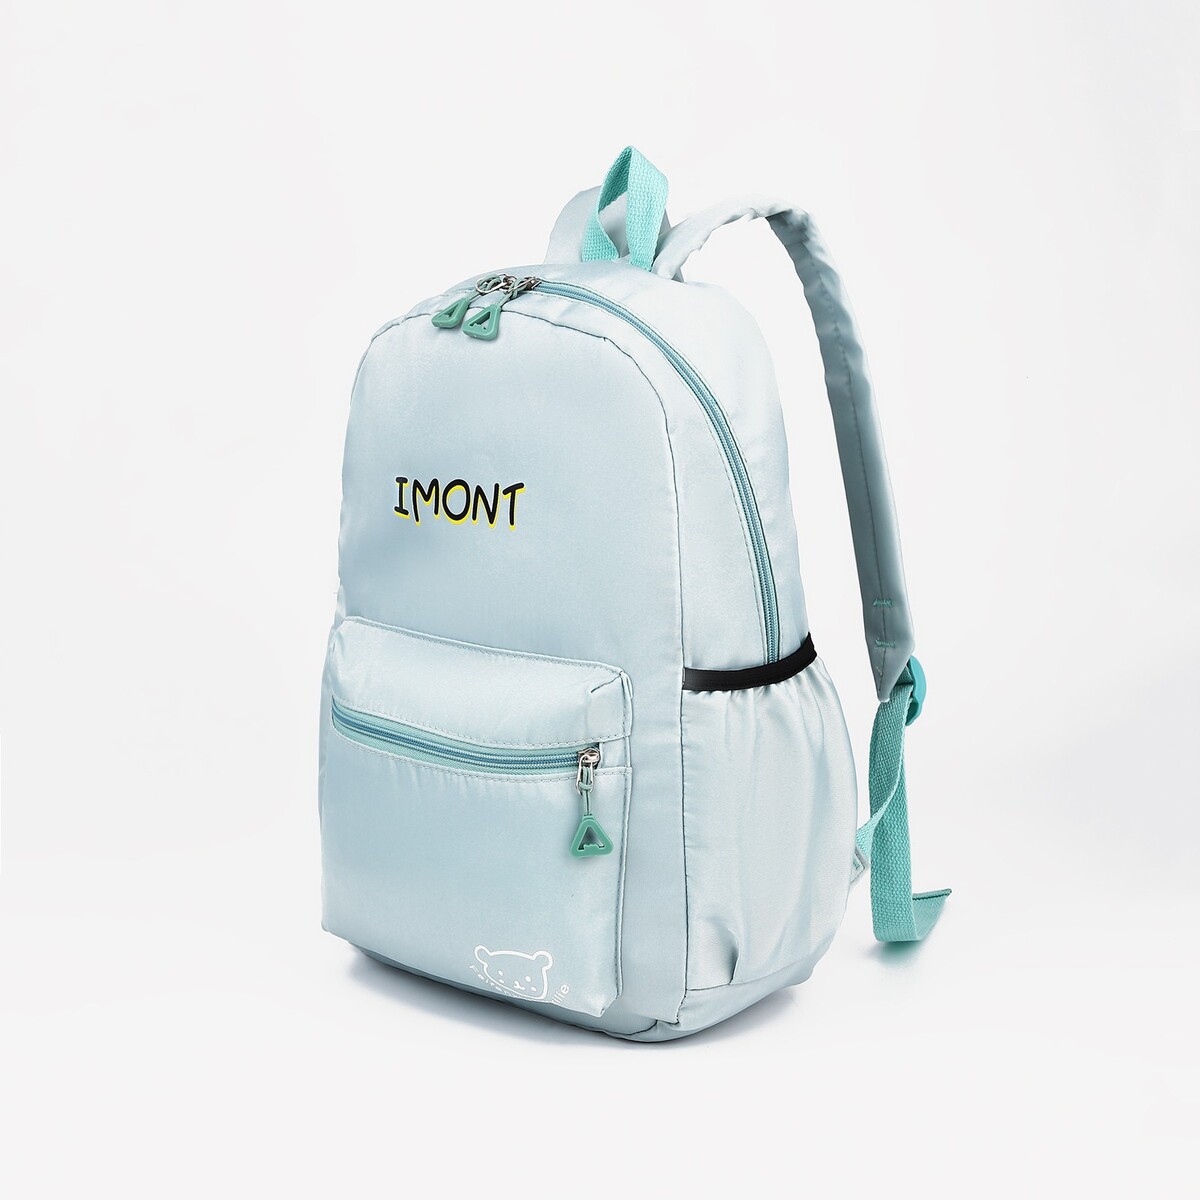 Рюкзак на молнии, 3 наружных кармана, цвет зеленый рюкзак школьный из текстиля на молнии 3 кармана бирюзовый